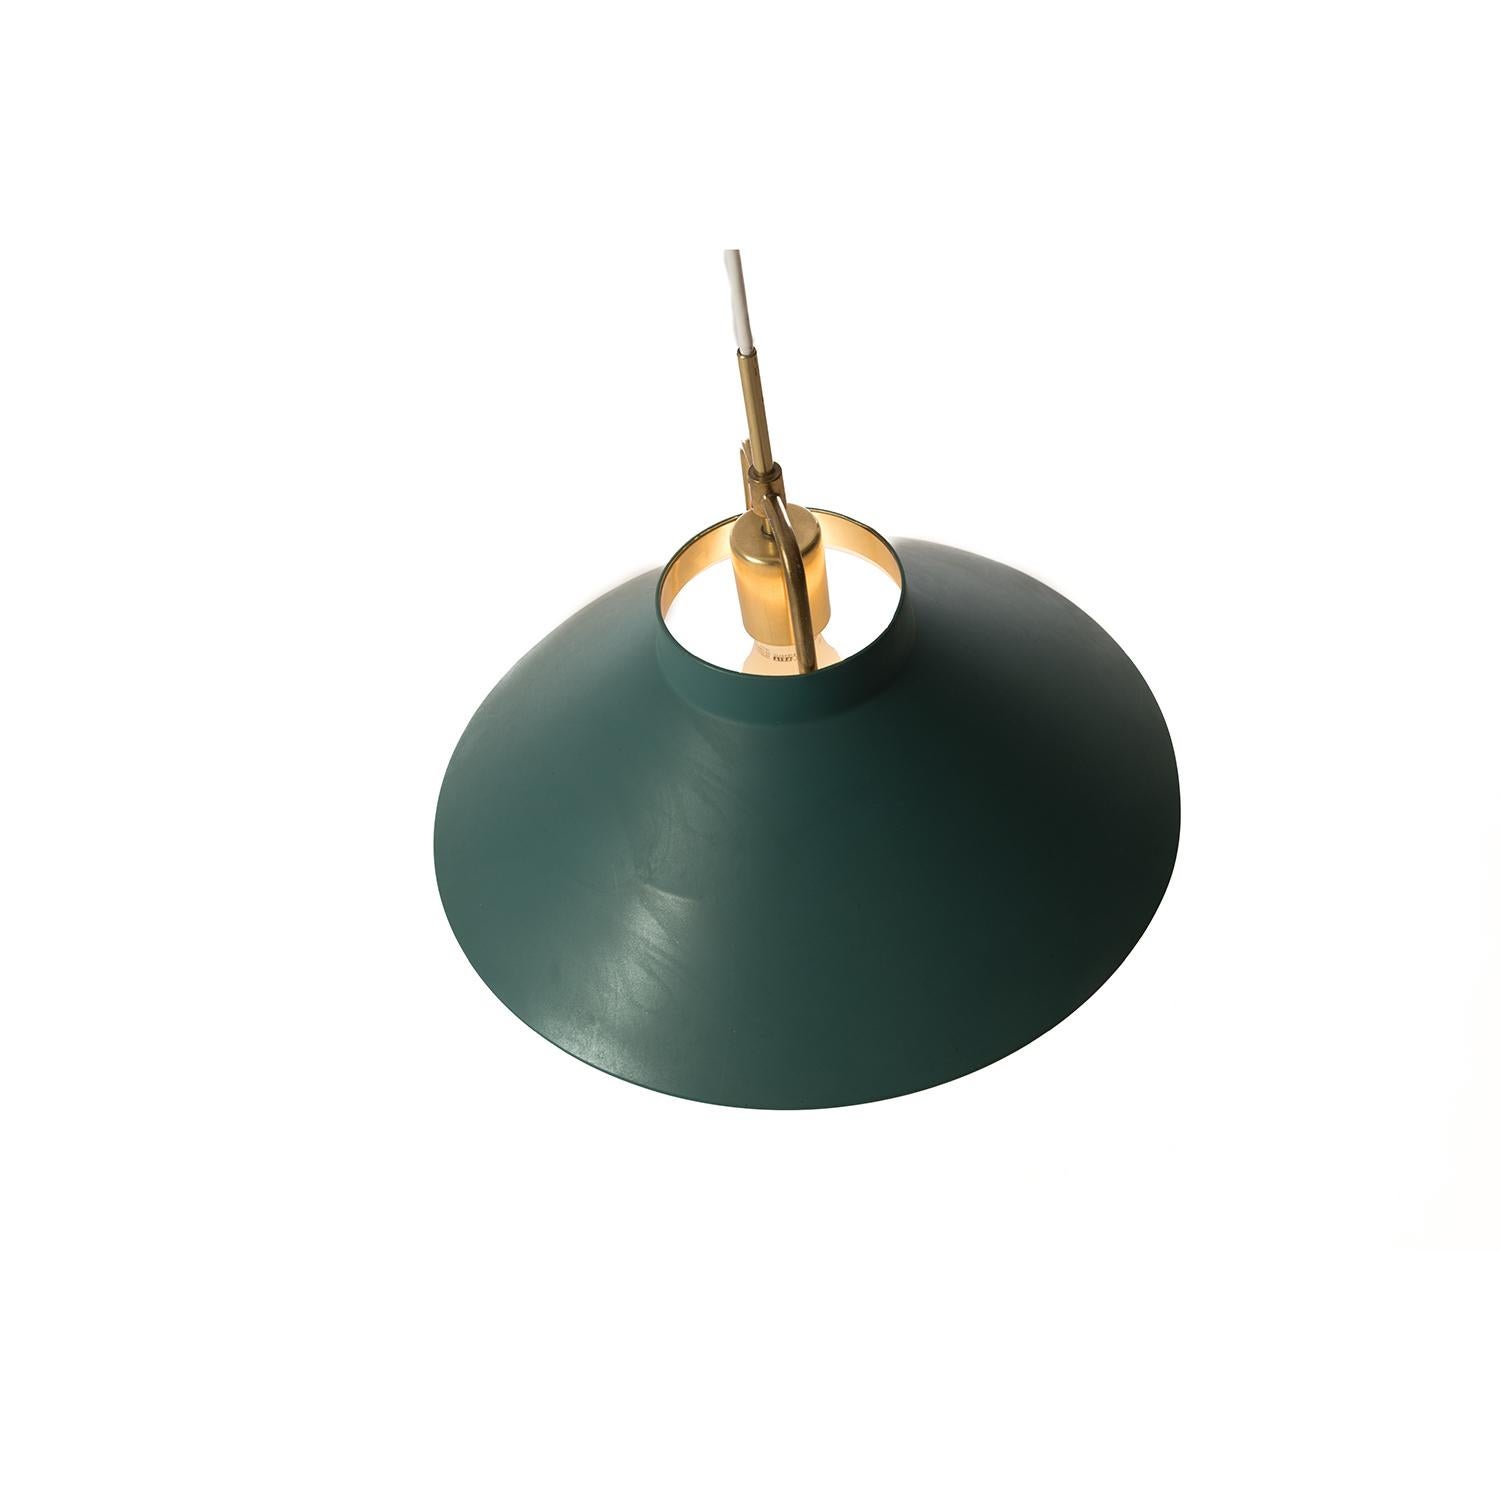 Danish Modern Pendant Fixture Green with Brass Details 1